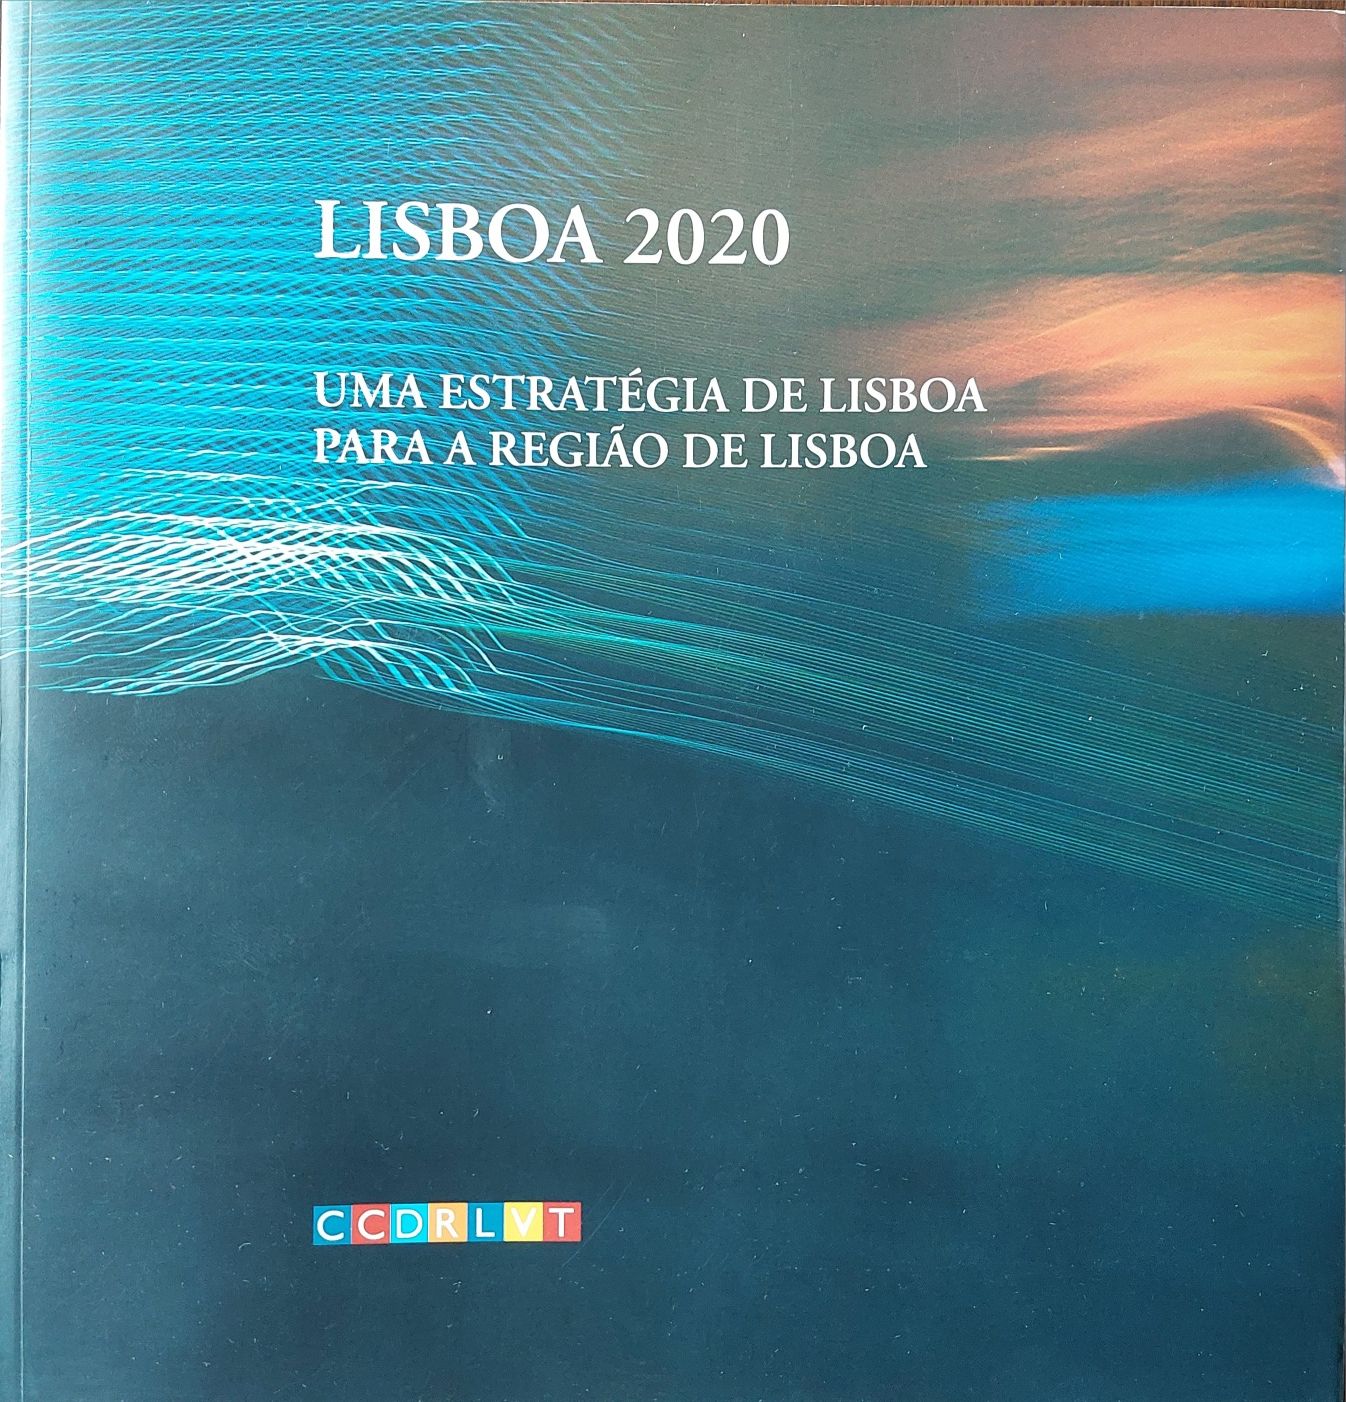 Livro "LISBOA 2020" - Uma Estratégia de Lisboa para a Região de Lisboa